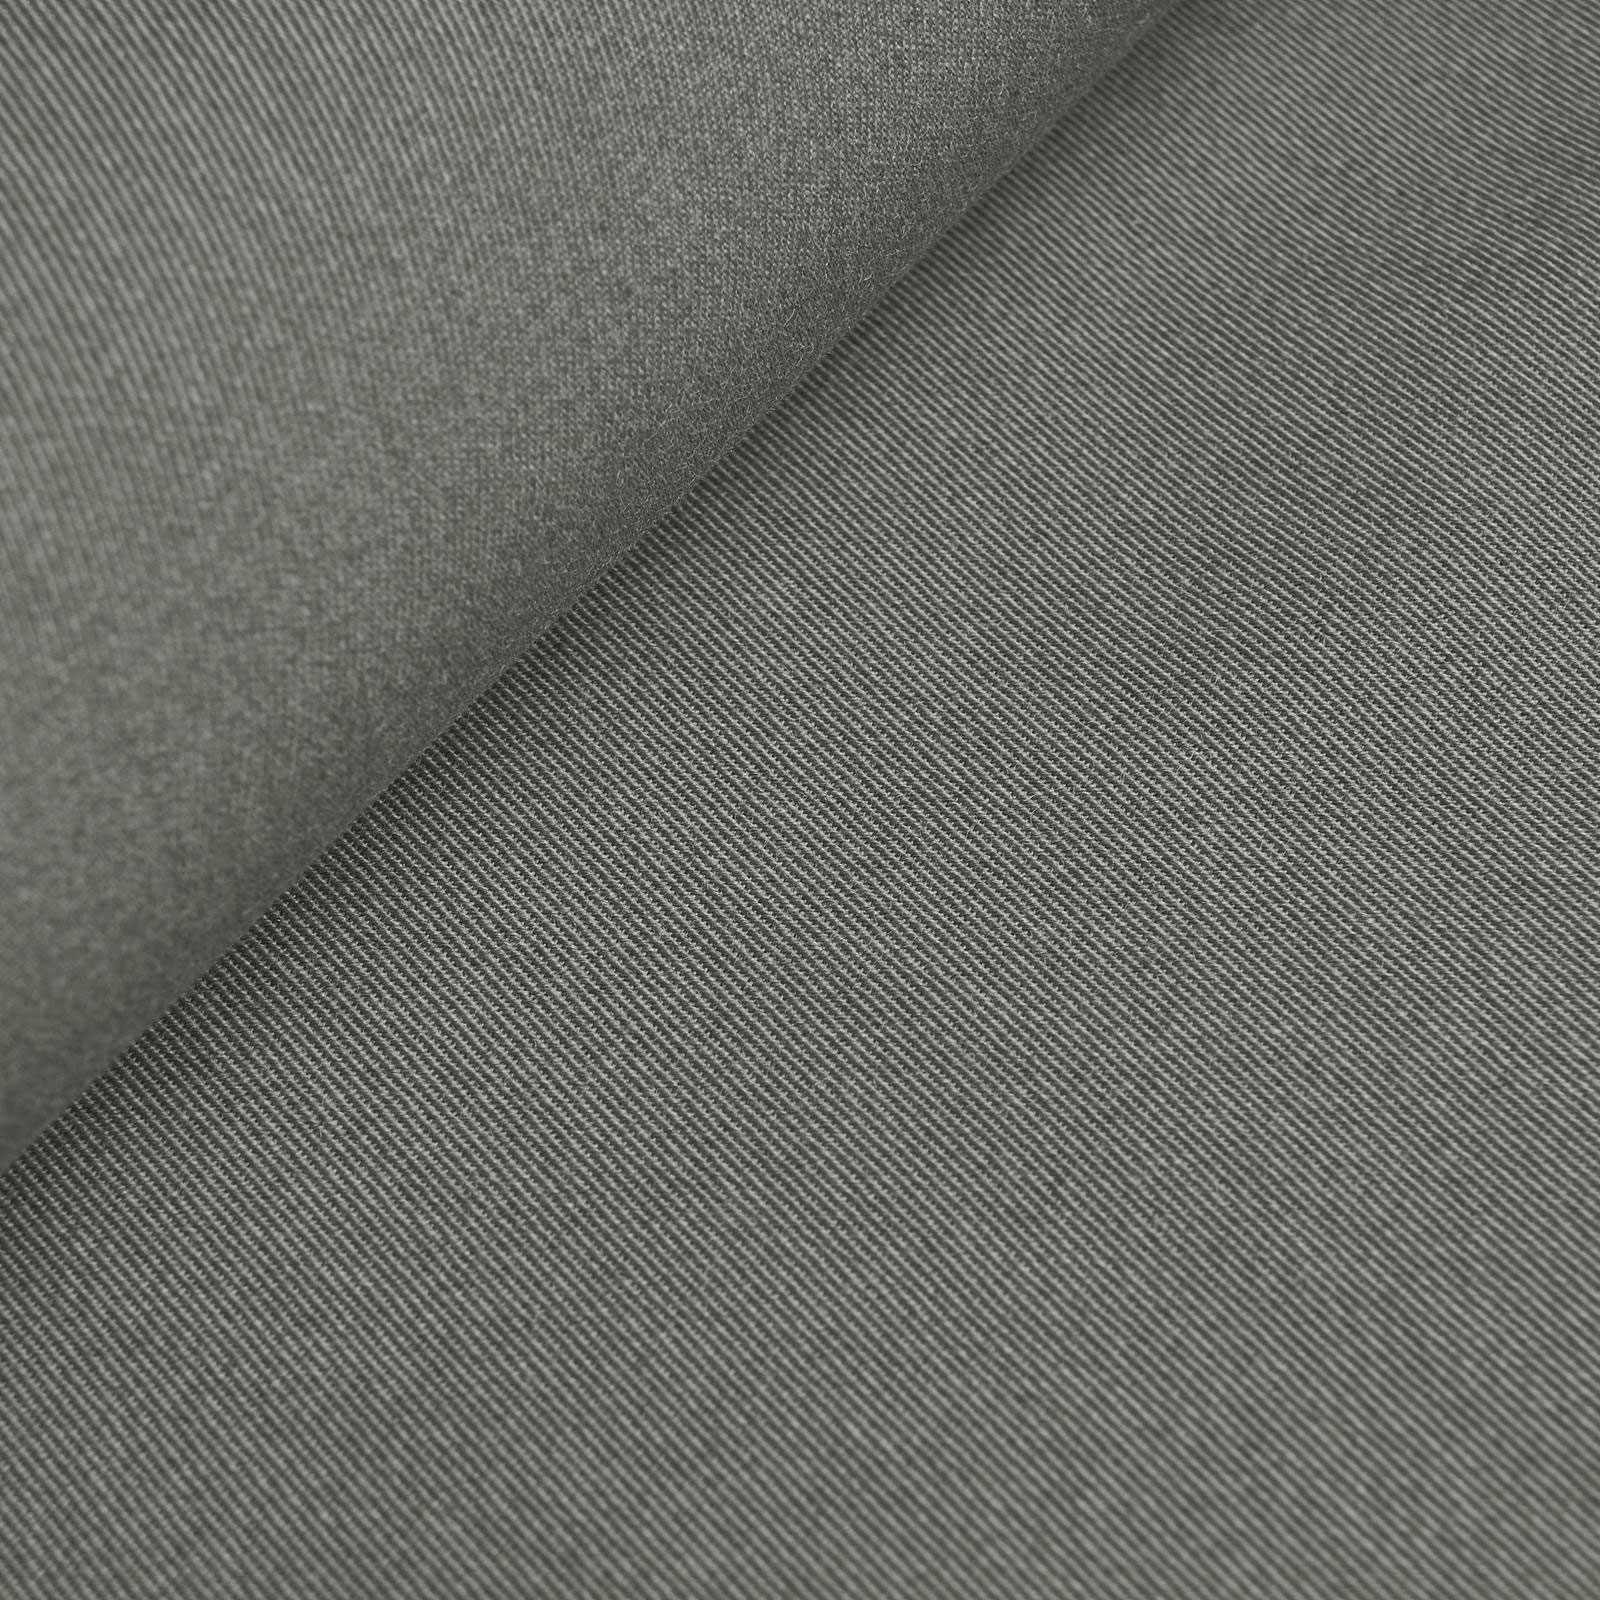 Franziska - pano de lã / pano uniforme (cinzento)